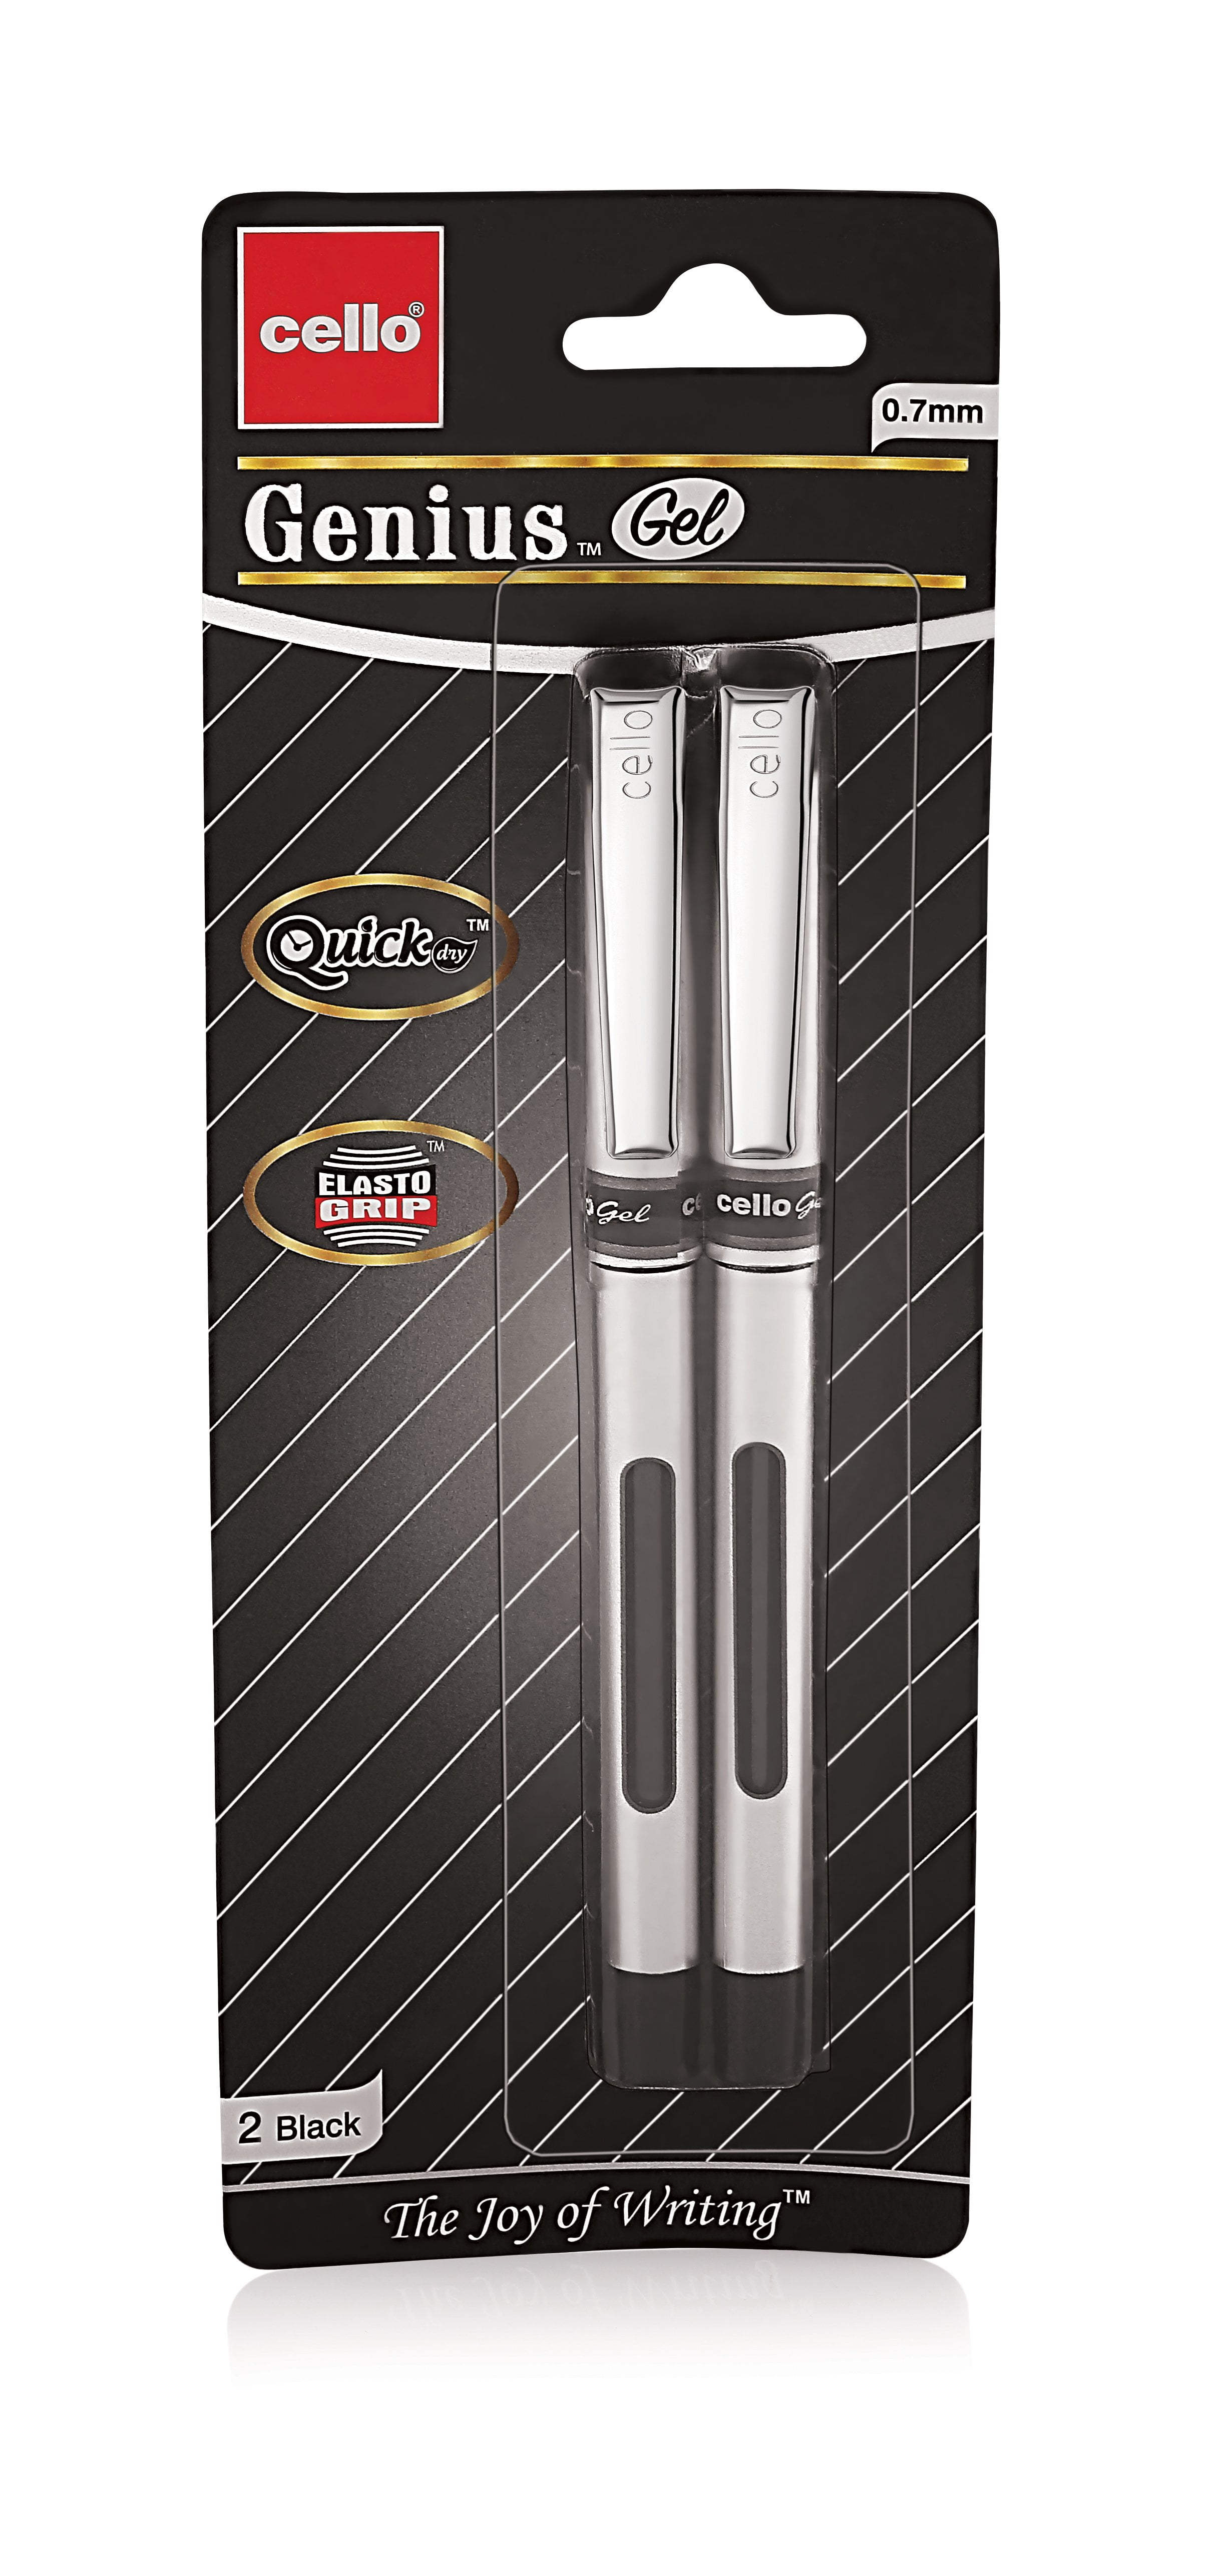 40x Cello Topball Click Retractable Ballpoint Pen Black Extra Smooth,Elasto Grip 